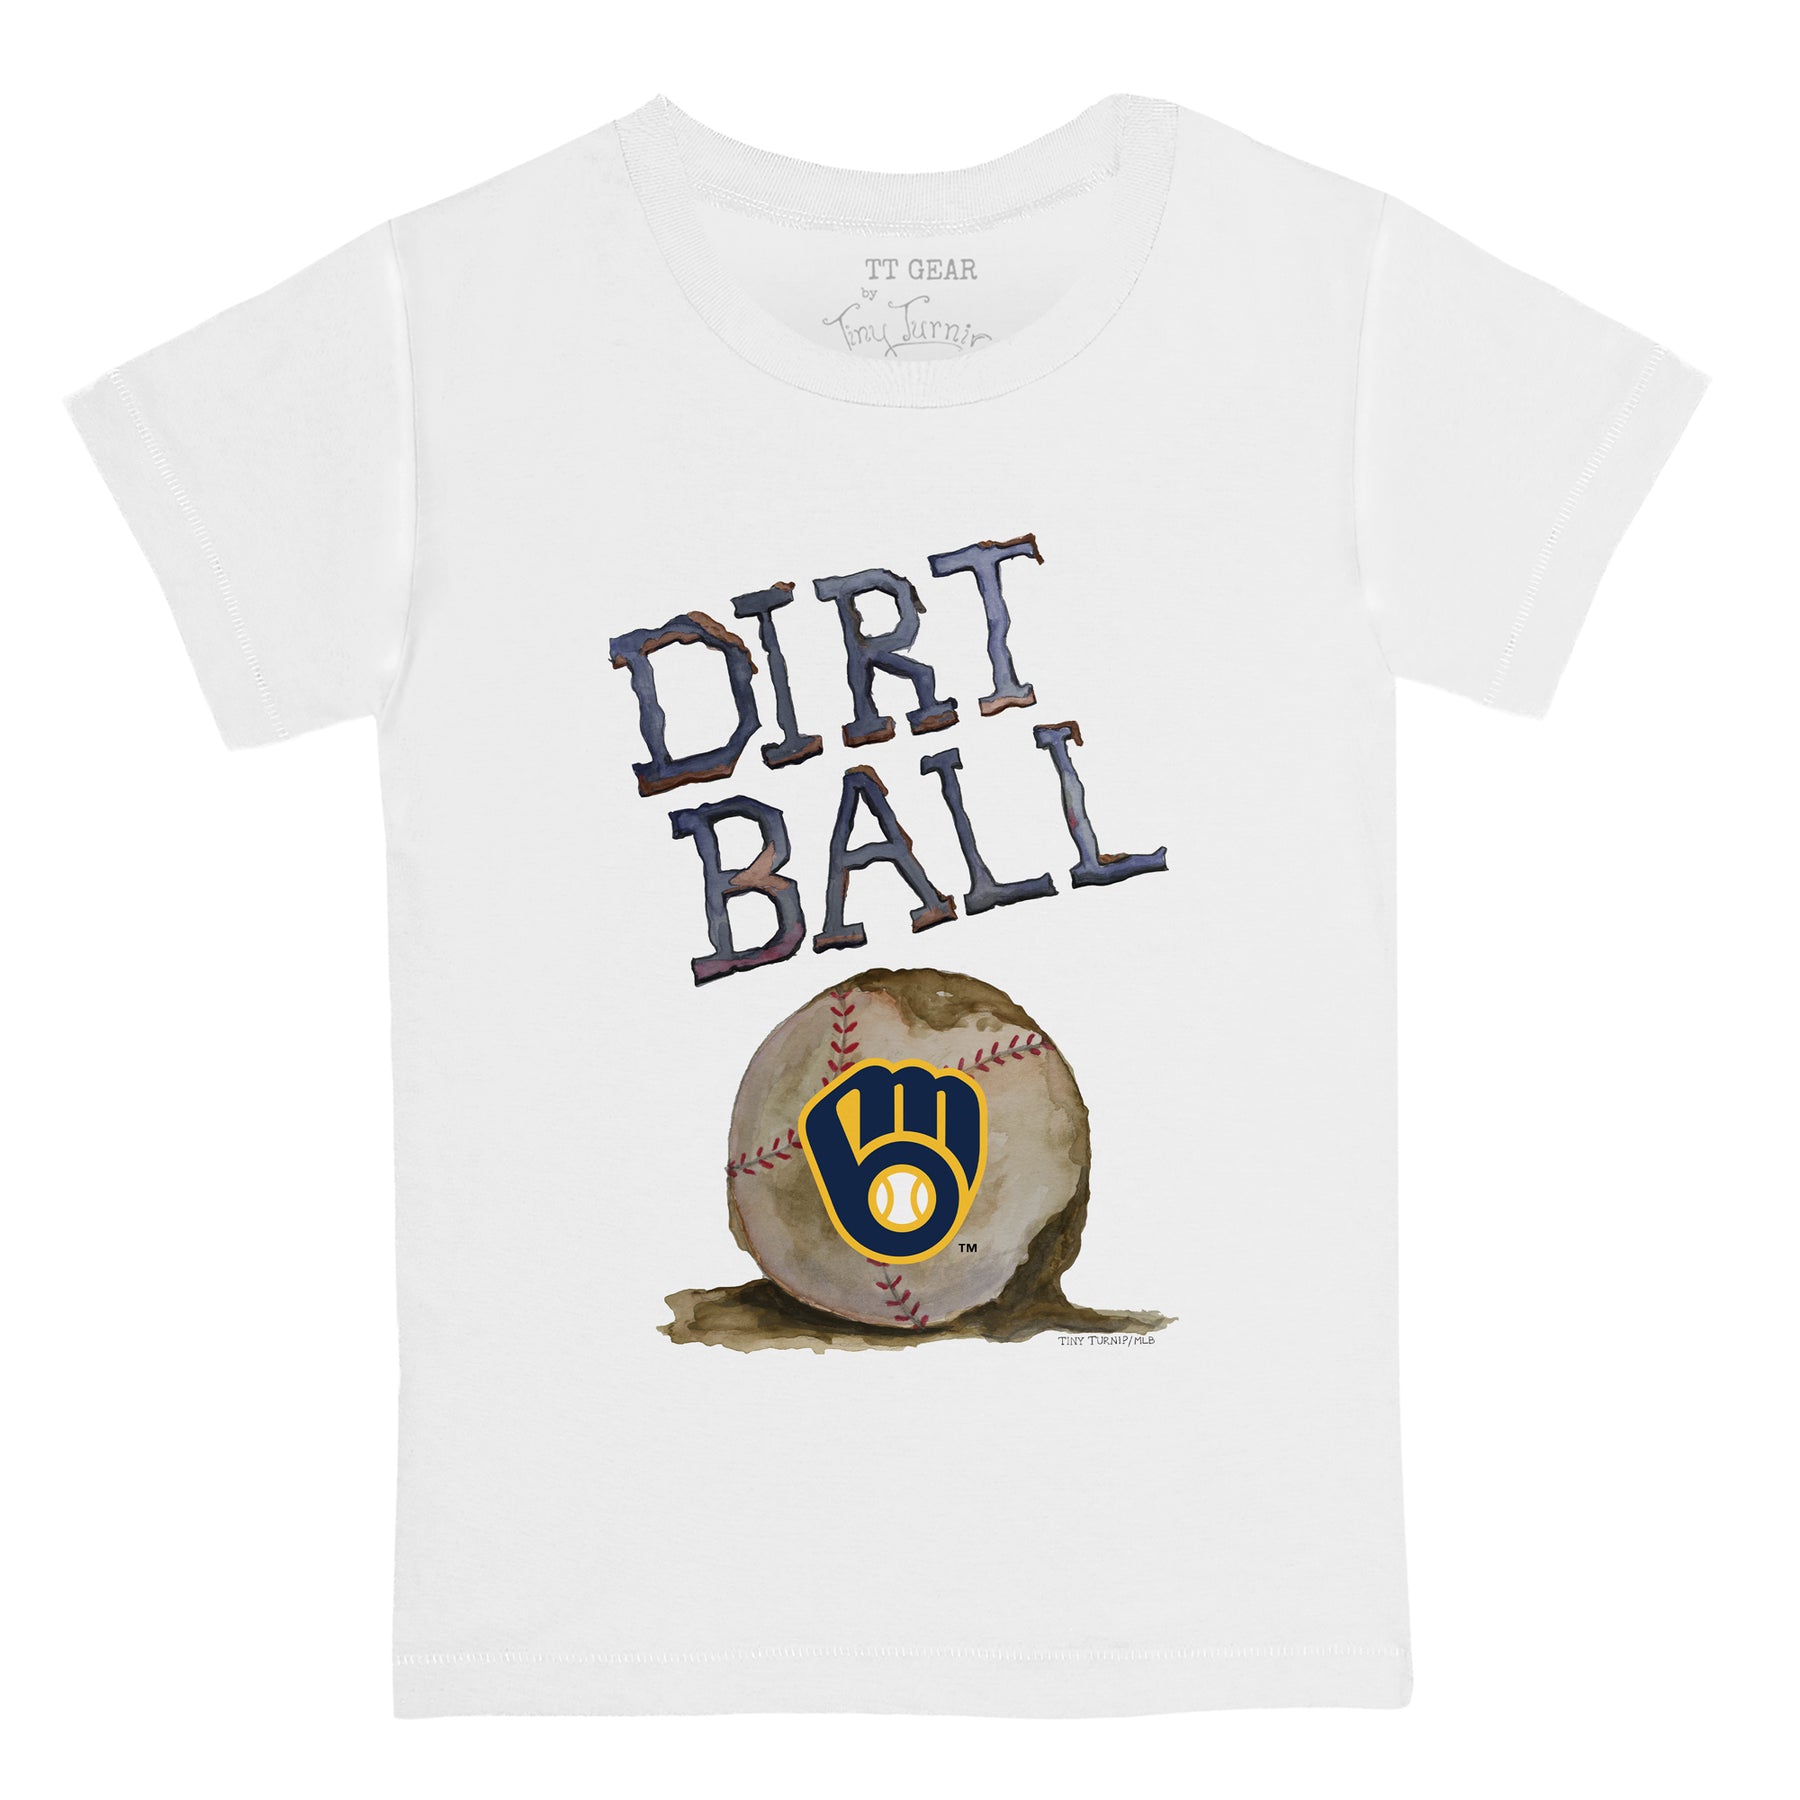 Milwaukee Brewers Dirt Ball Tee Shirt